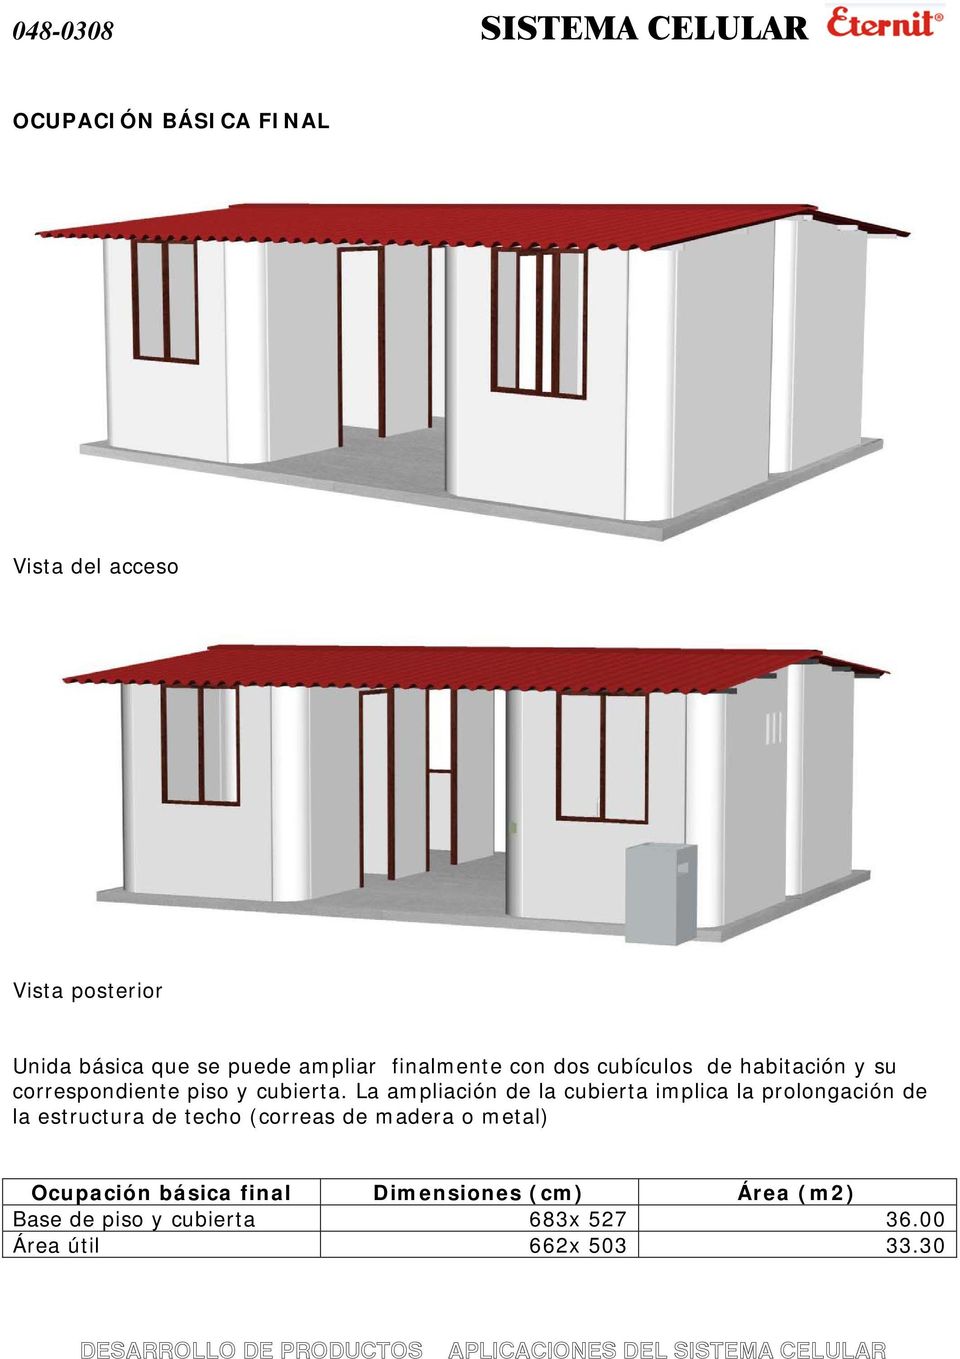 La ampliación de la cubierta implica la prolongación de la estructura de techo (correas de madera